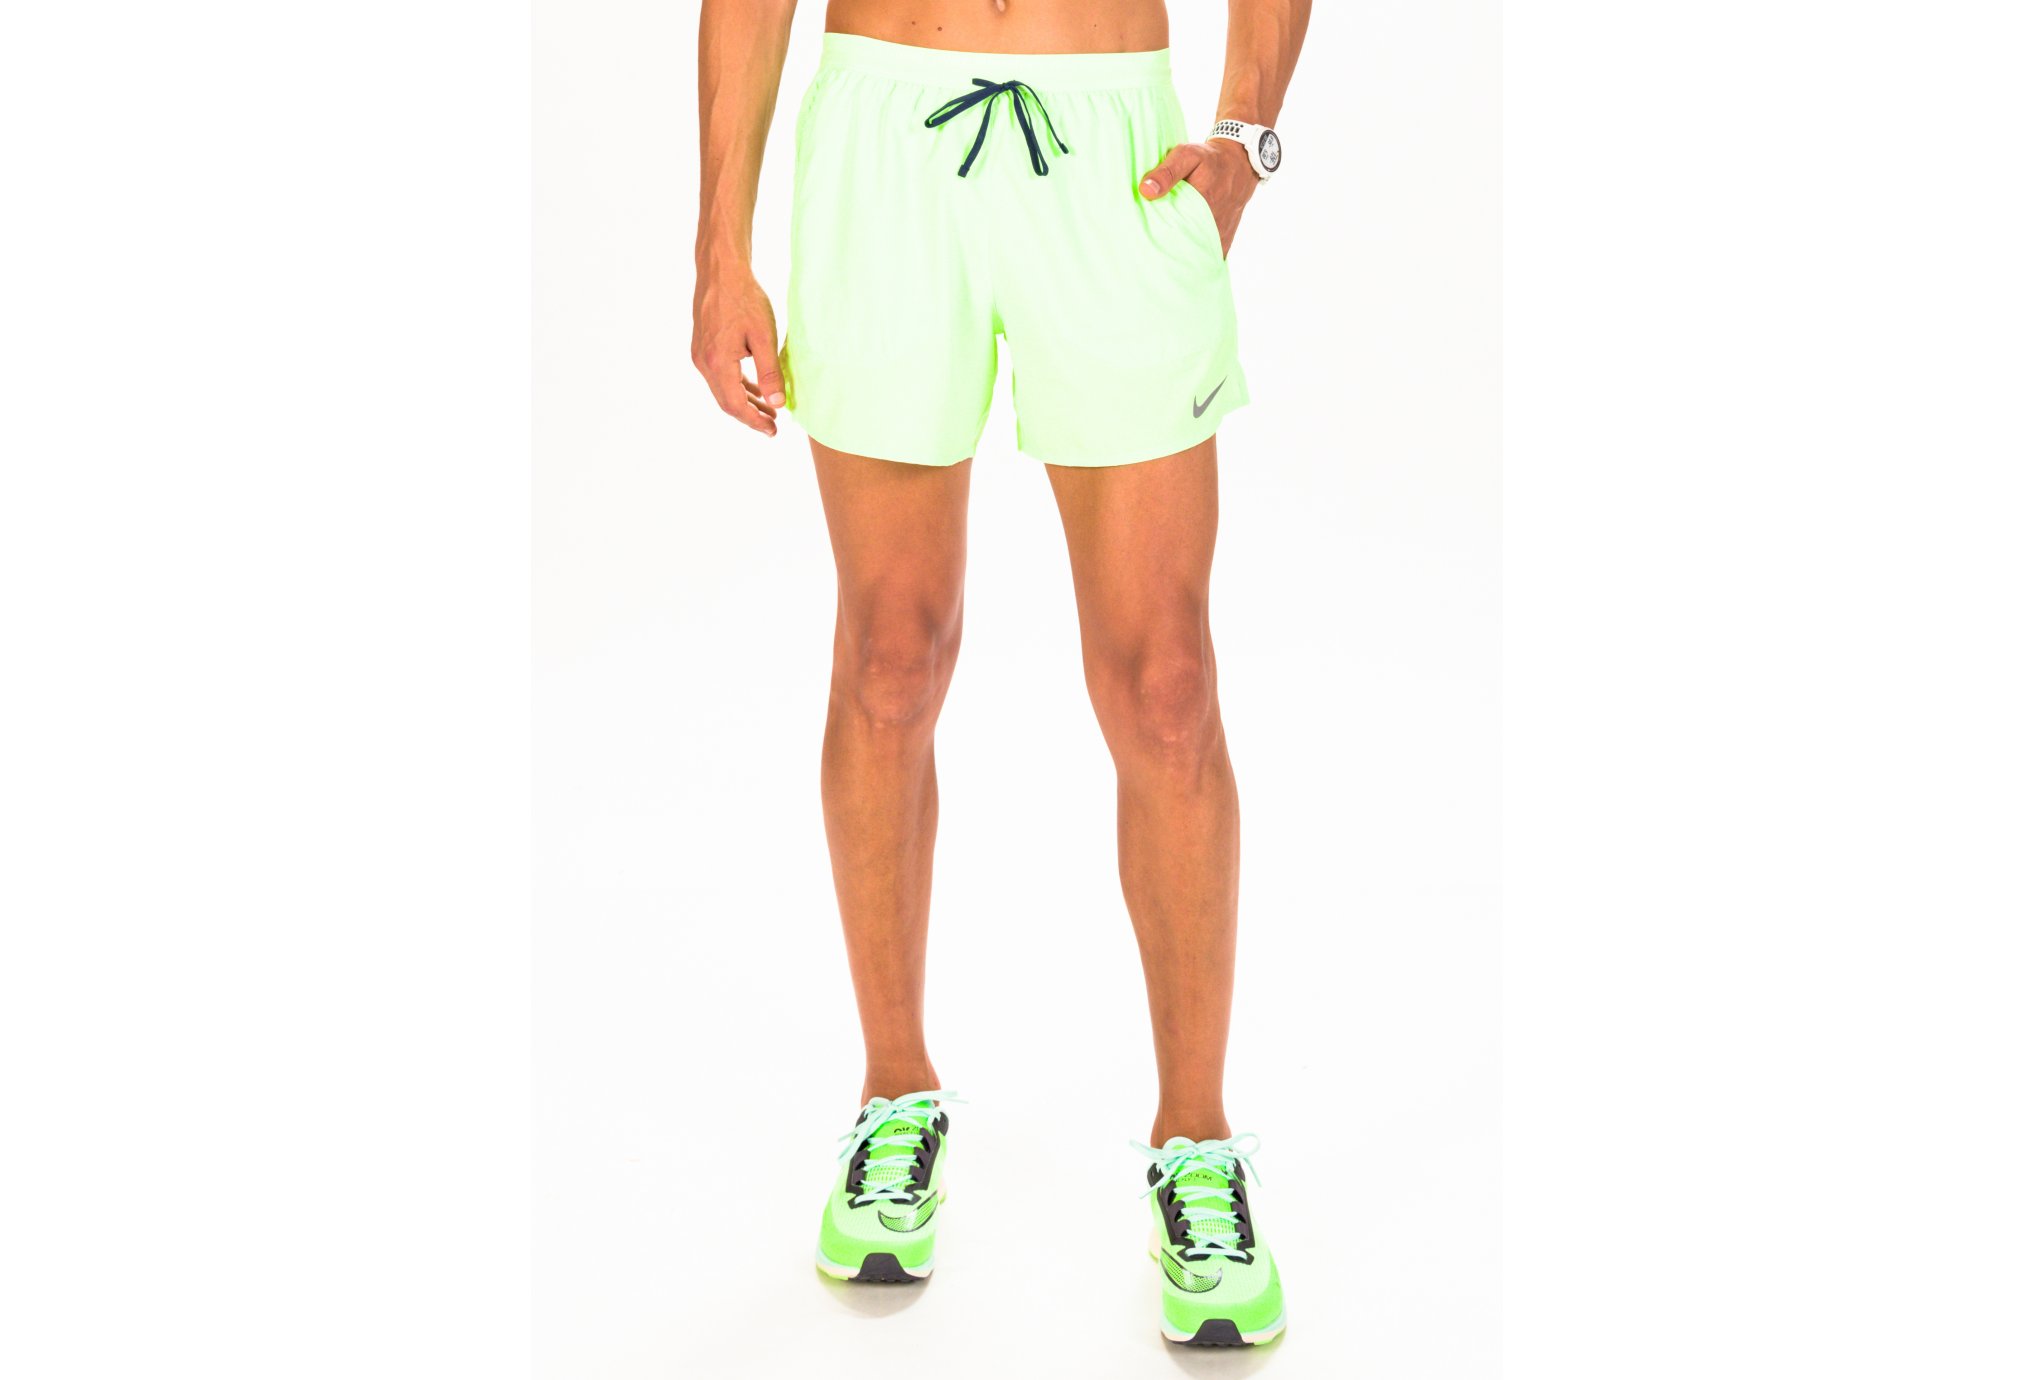 Nike Stride M vêtement running homme